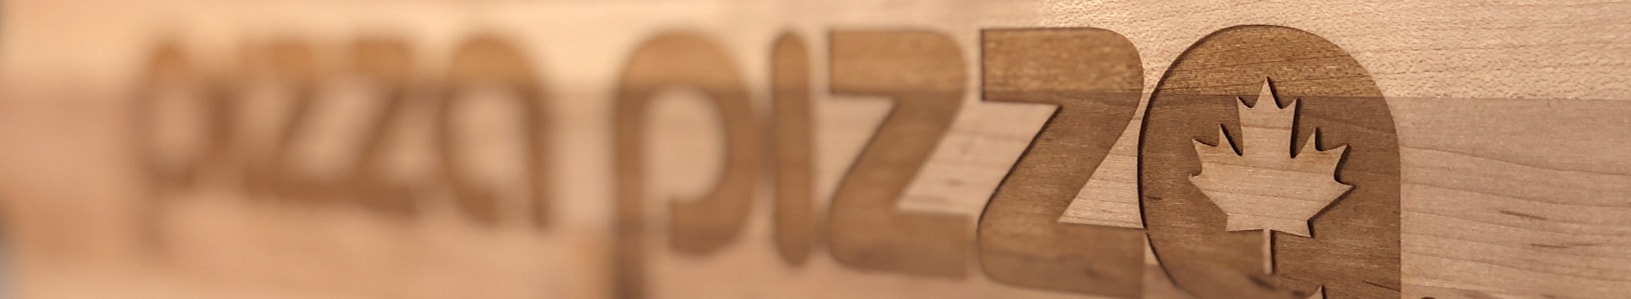 Pizza Pizza Offre À Nouveau Cet Été Ses « Bouchées Bocci » Qui Partent Comme Des Petits Pains Chauds!